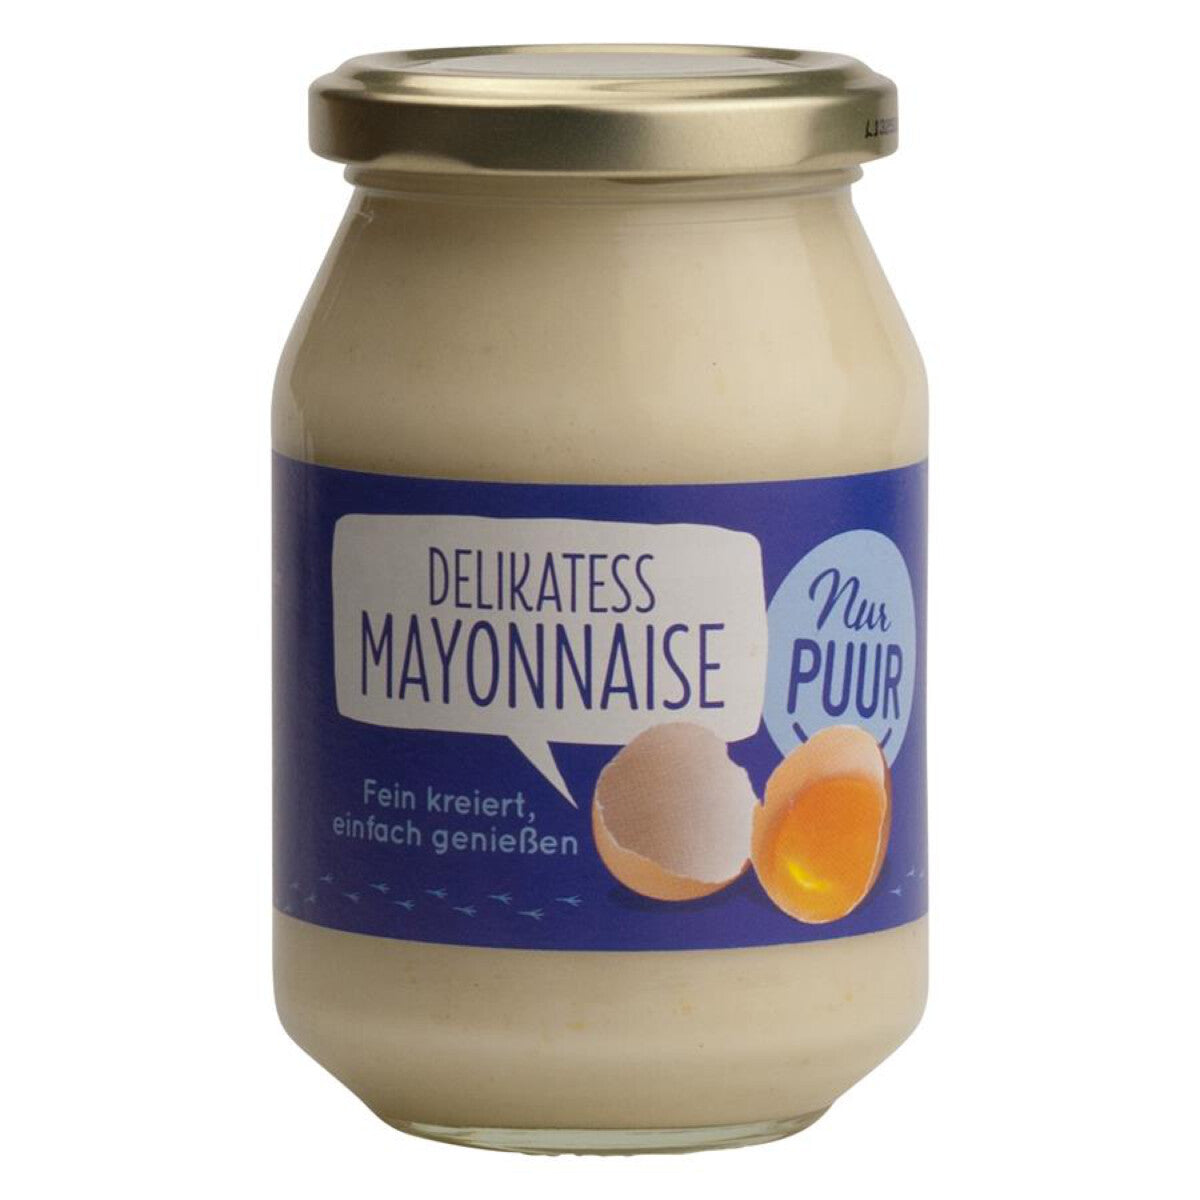 NUR PUUR Delikatess Mayonnaise - 250 ml